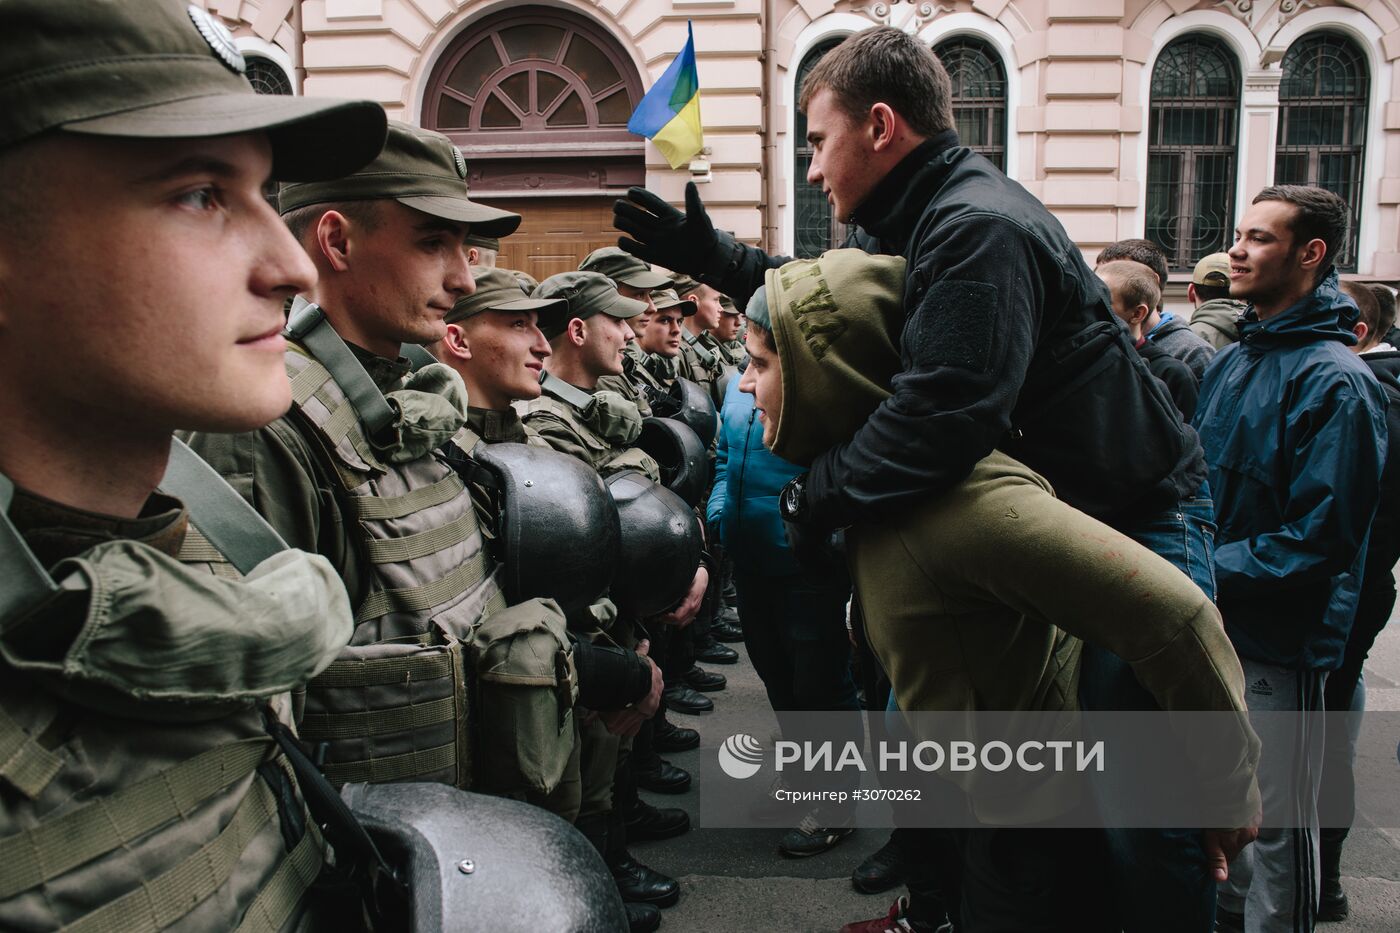 Акции радикалов у украинских филиалов Сбербанка